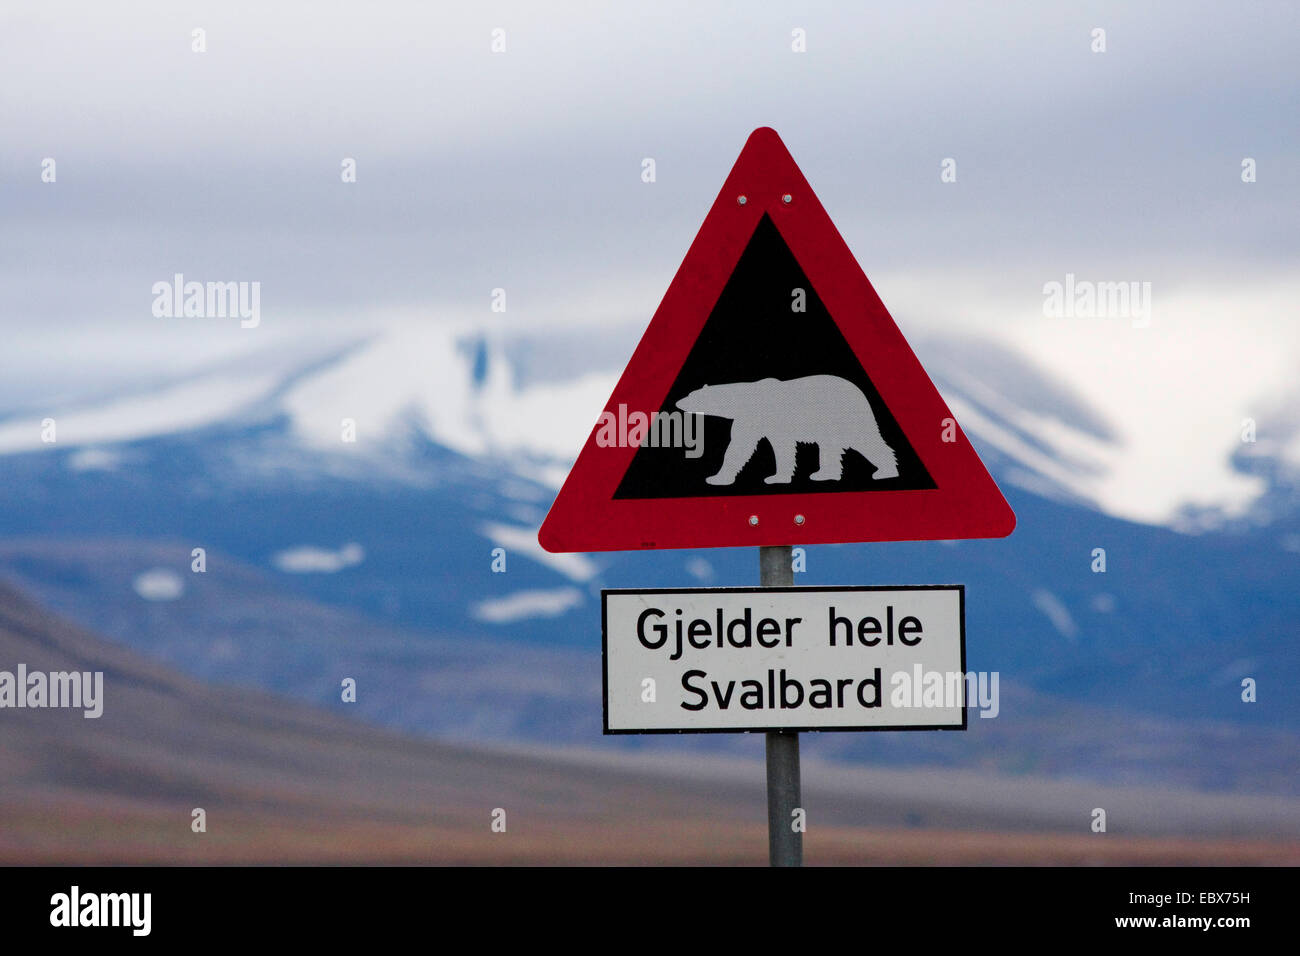 L'ours polaire (Ursus maritimus), connectez-vous à un village de la sortie d'avertissement l'ours polaire, la Norvège, Svalbard, Adventdalen, Longyaerbyen Banque D'Images